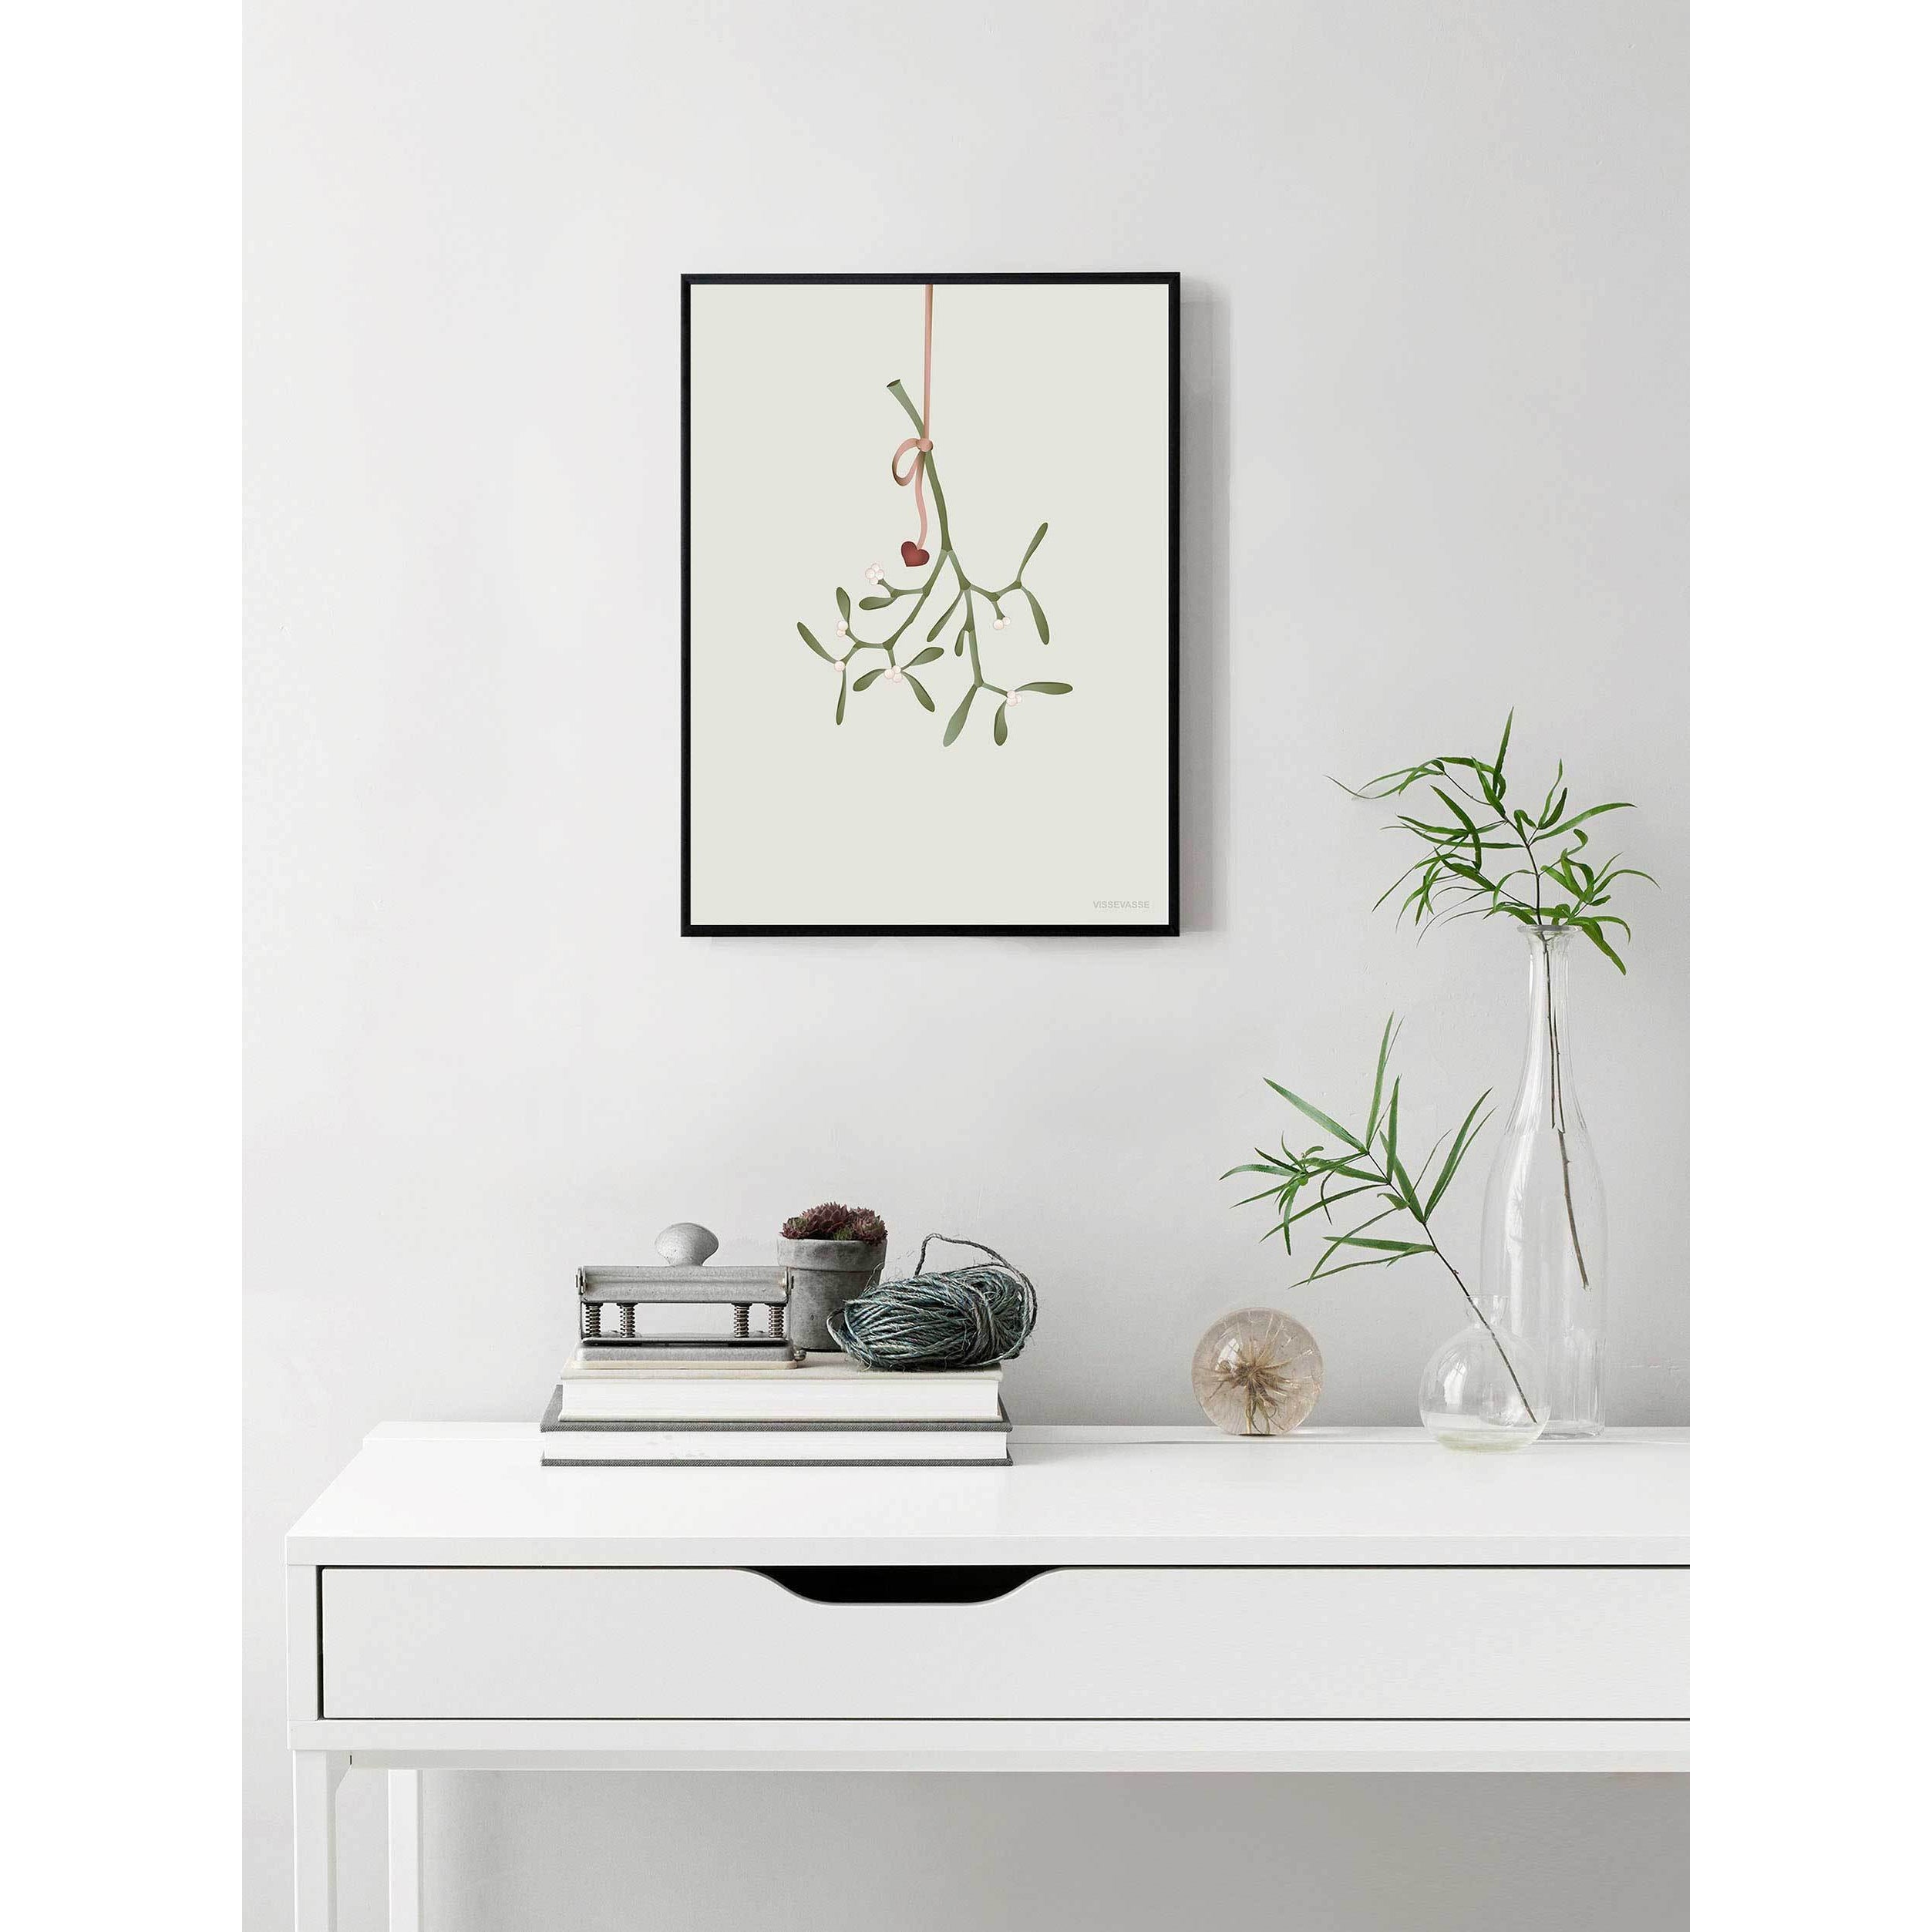 Vissevasse Mistletoe plakat, 15 x21 cm